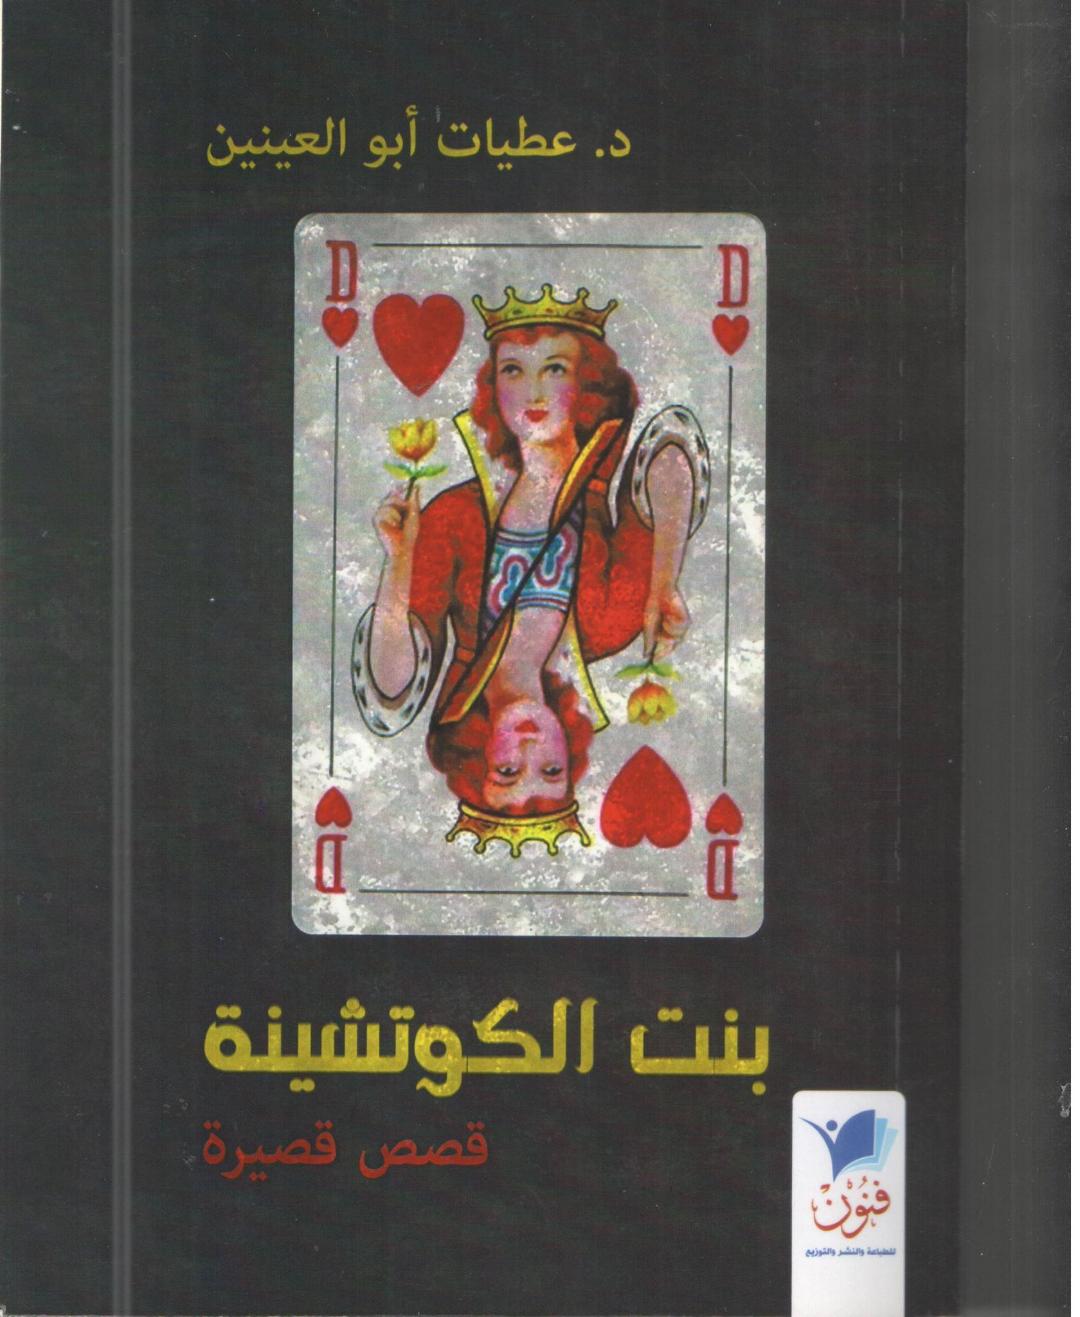   «بنت الكوتشينة» مجموعة قصصية جديدة للإعلامية والروائية د.عطيات أبو العينين